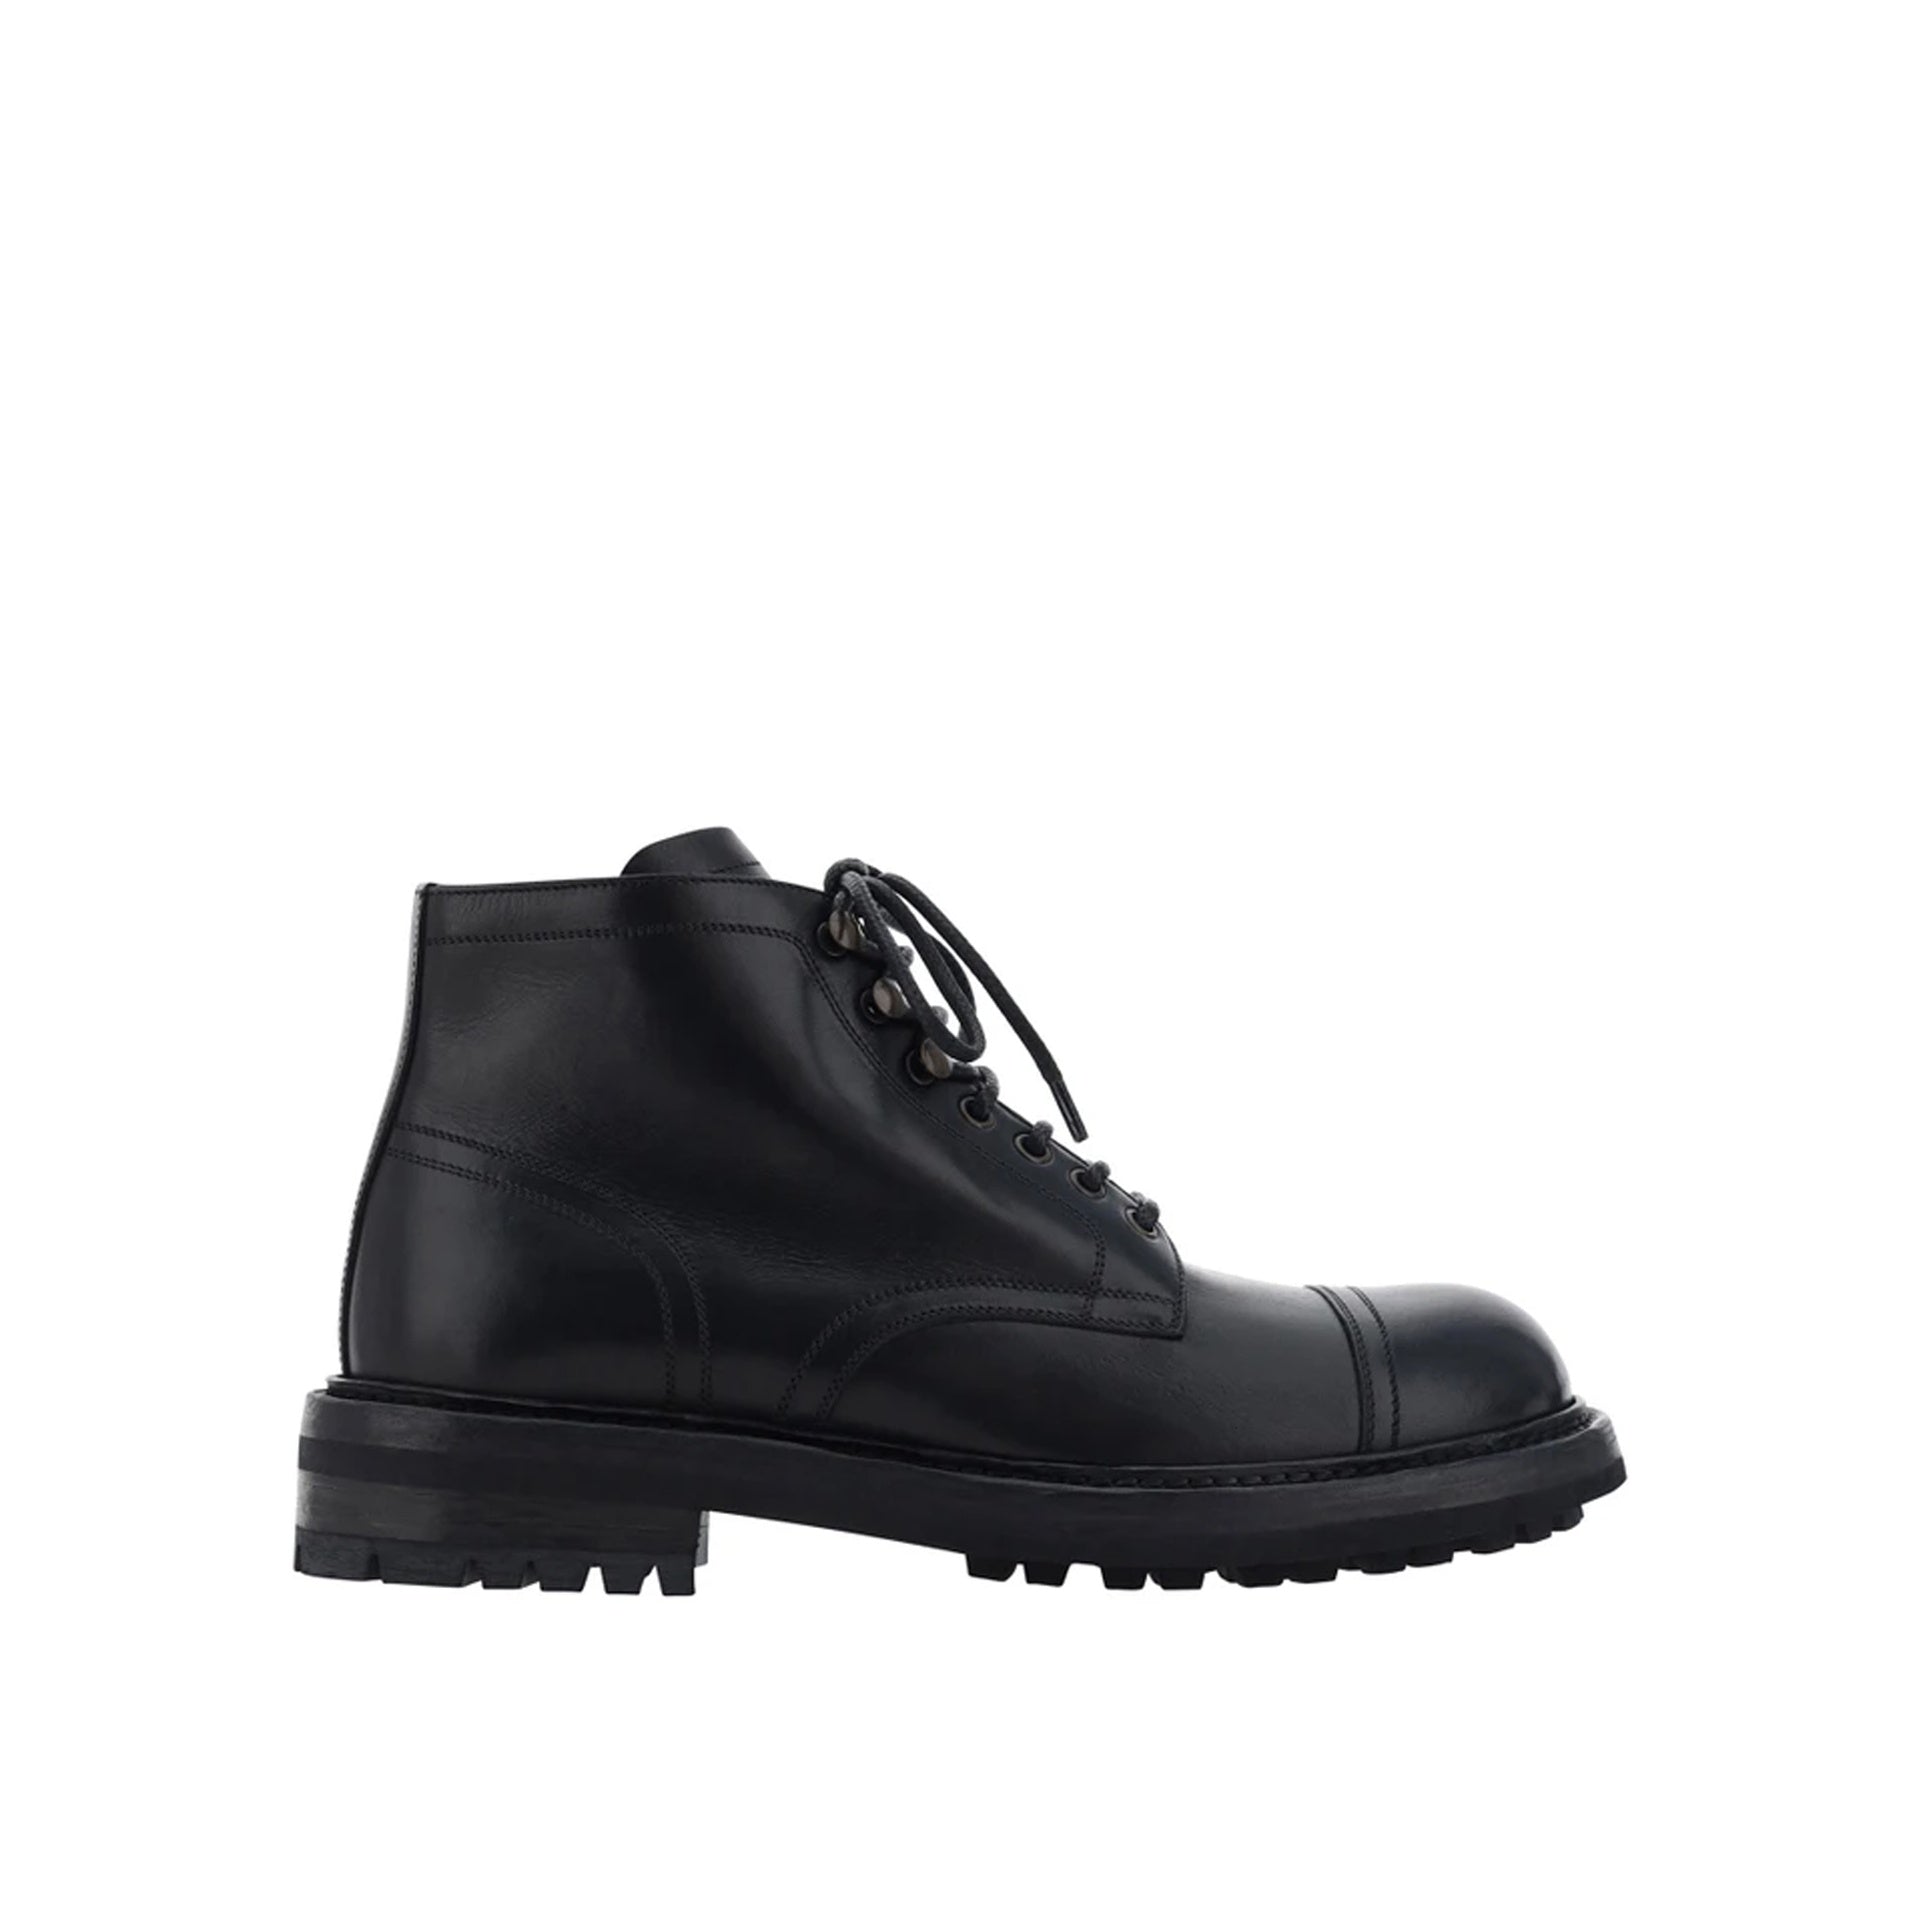 DOLCE___GABBANA_Dolce___Gabbana_Lace-Up_Leather_Boots_A60316AO018_80999_Black_1.jpg